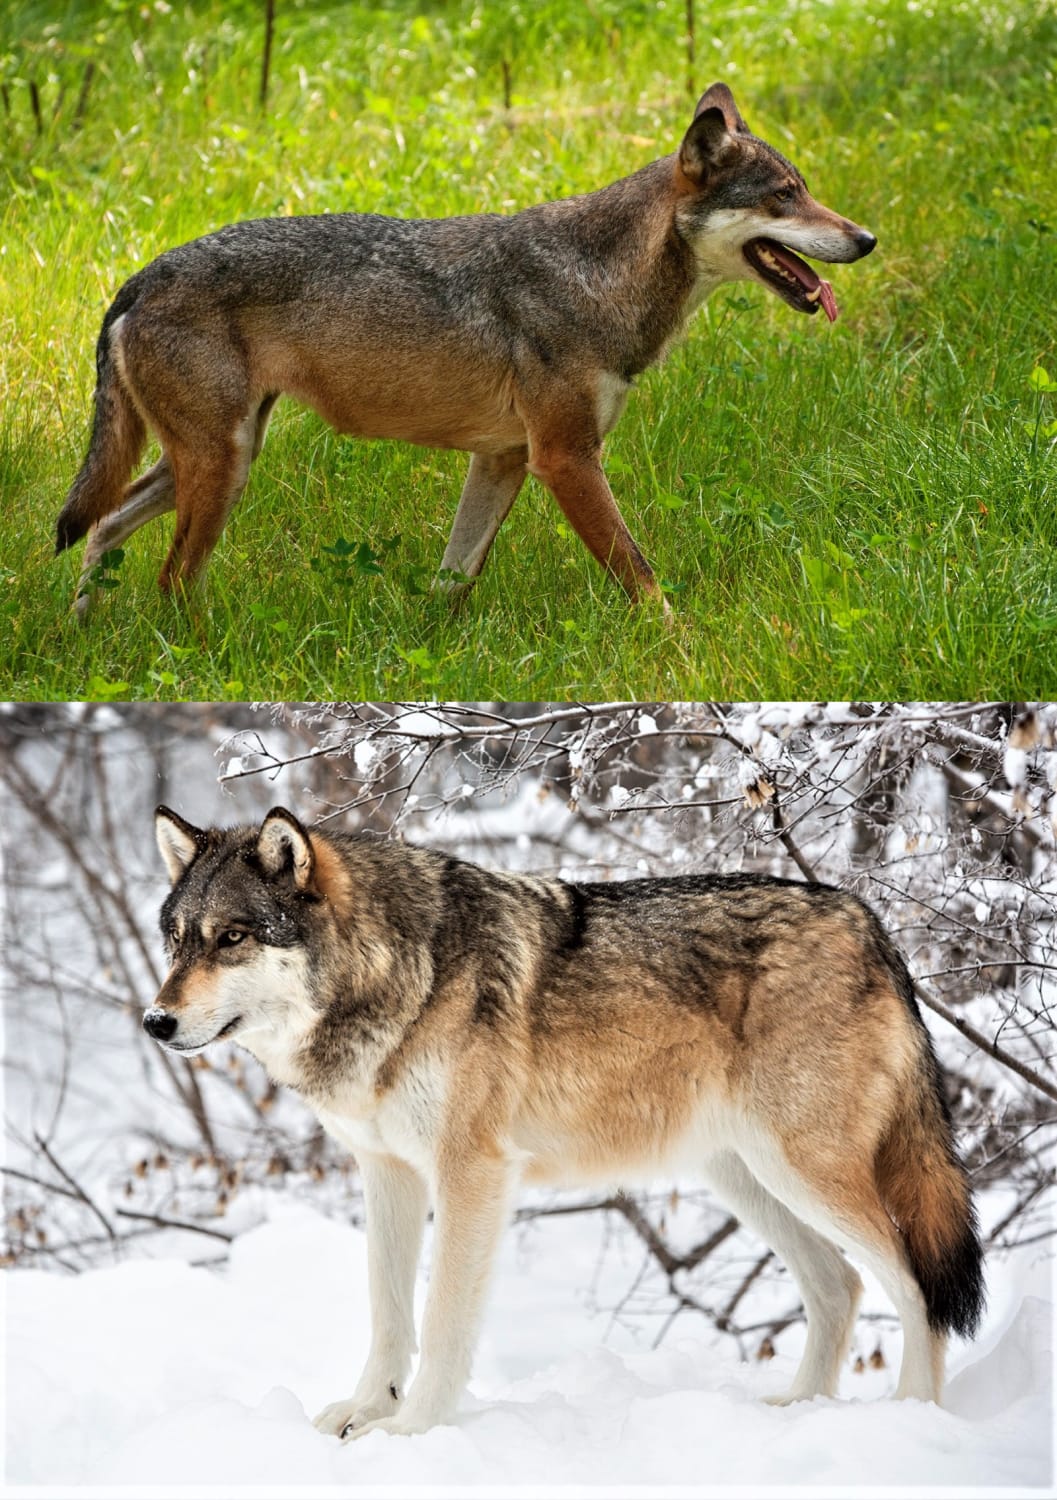 European Wolf Summer coat vs Winter coat